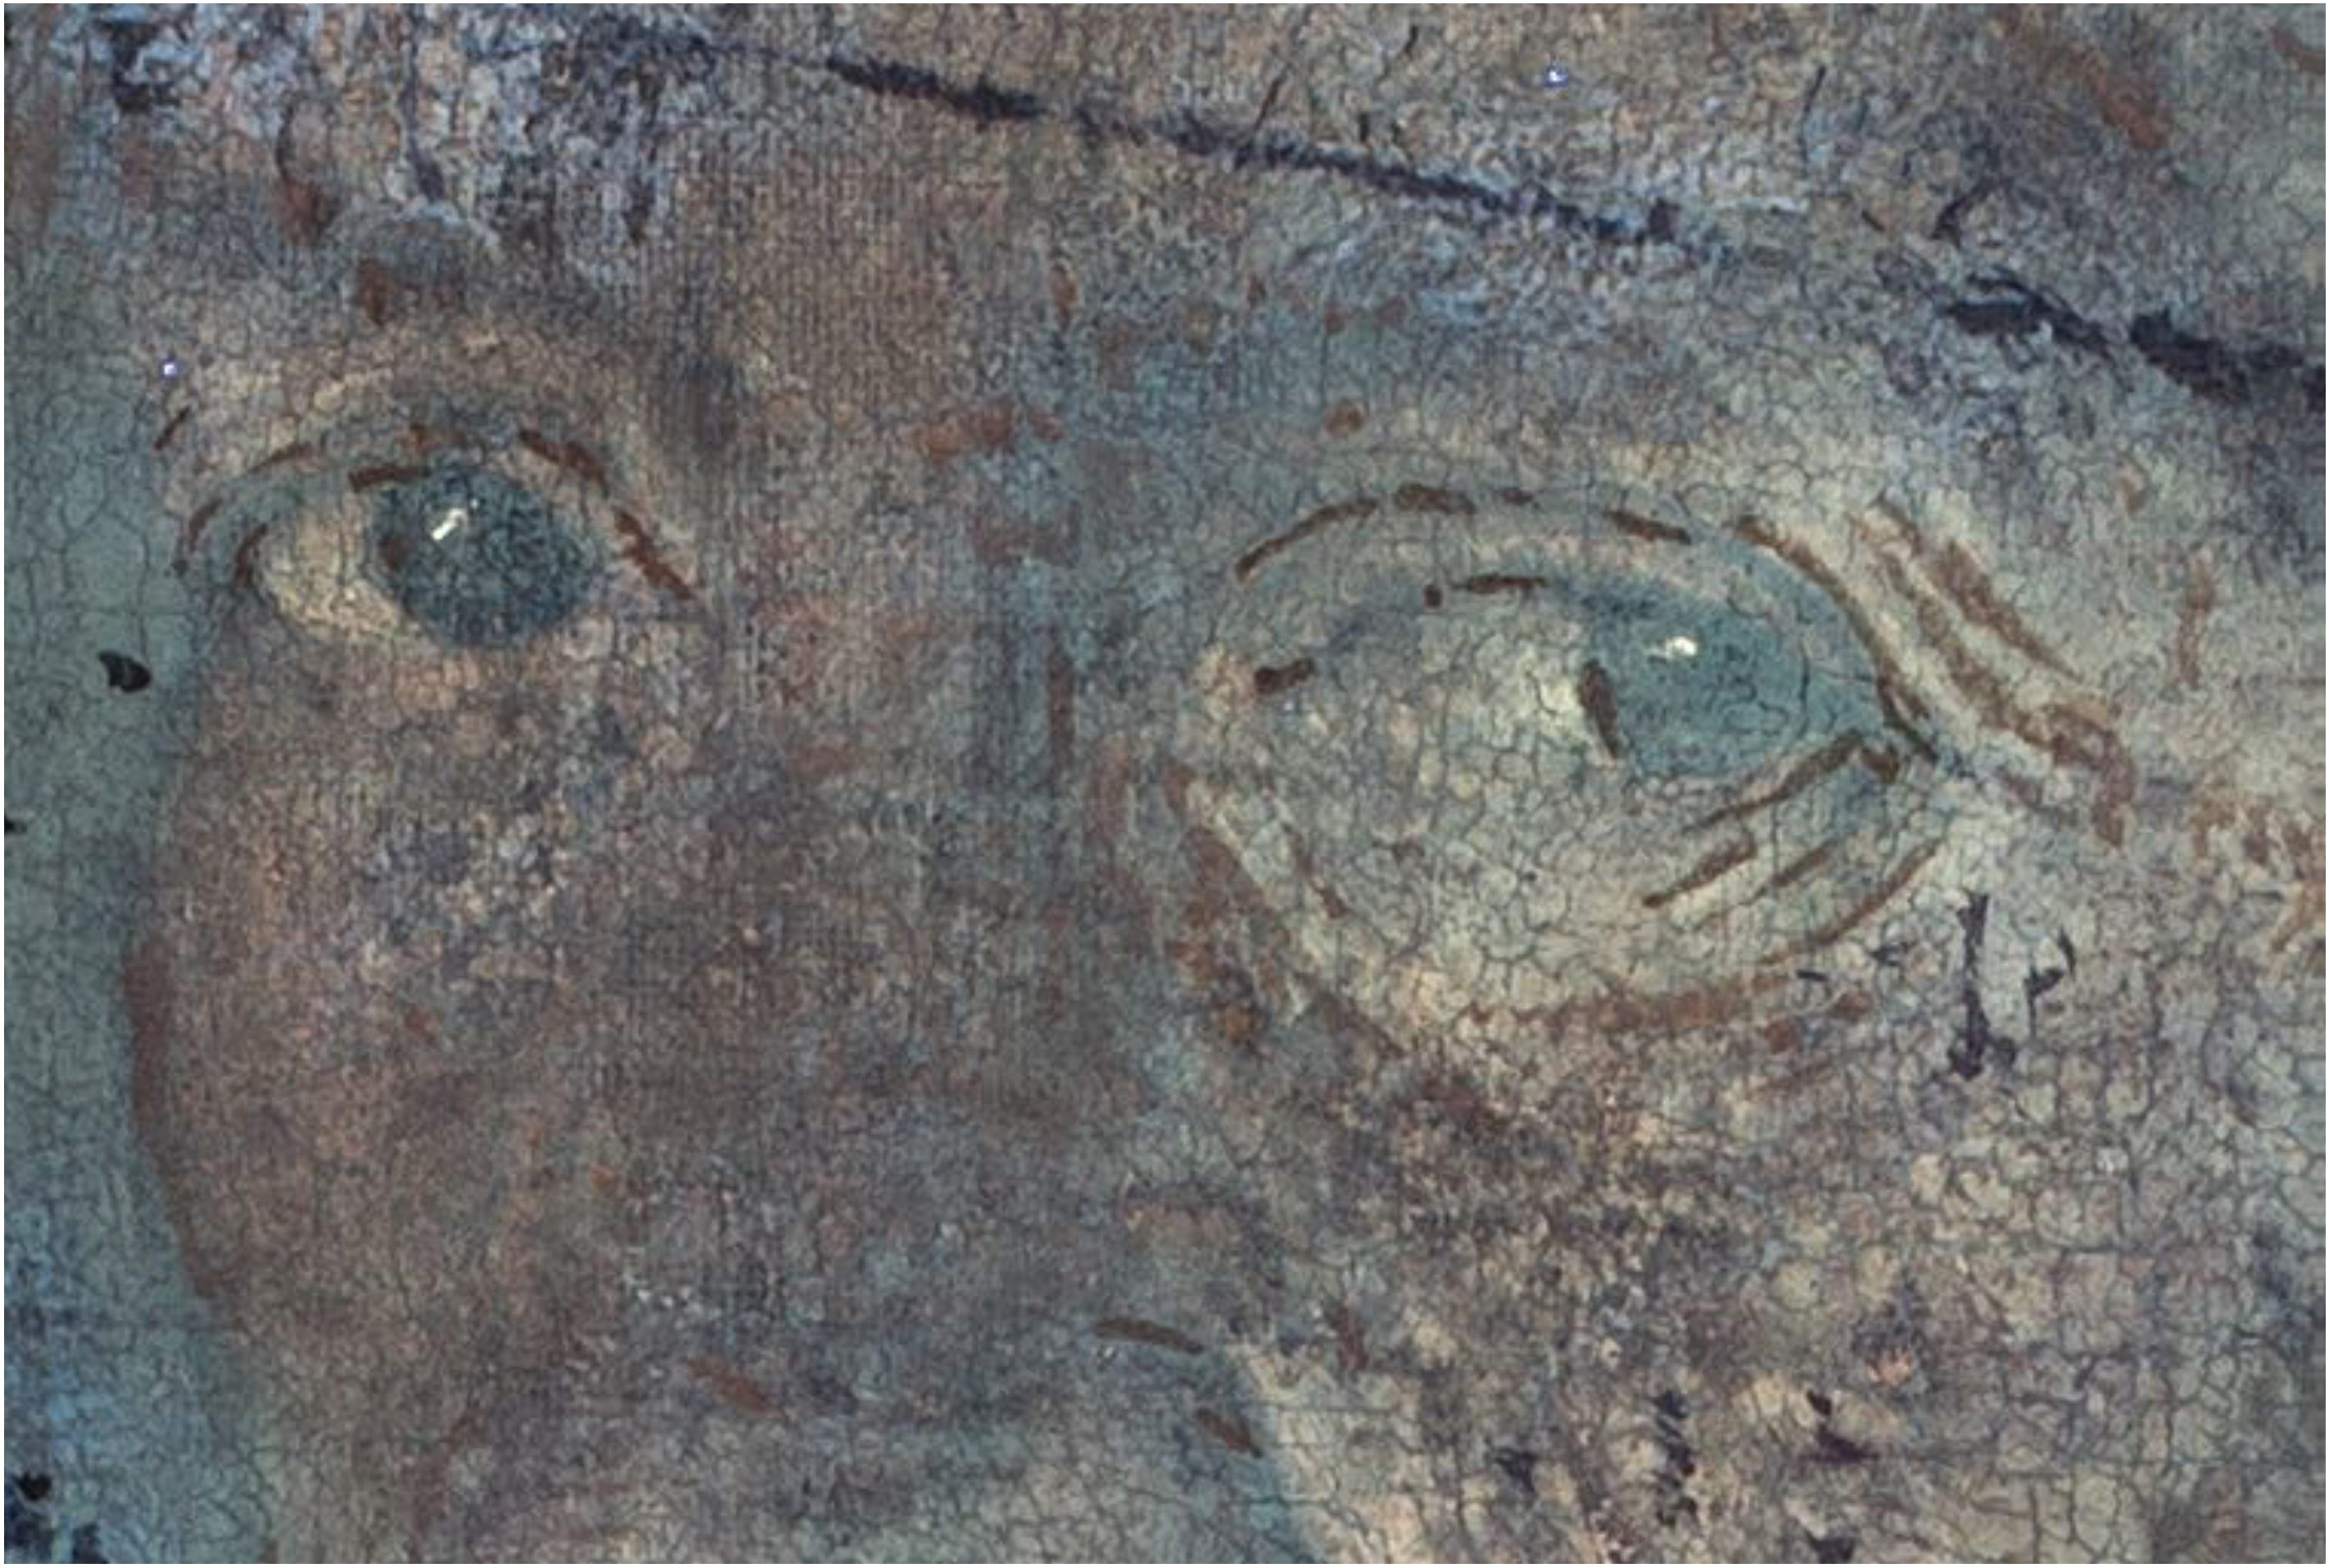 Giorgione, La Vecchia, macrofotografie degli occhi in UV